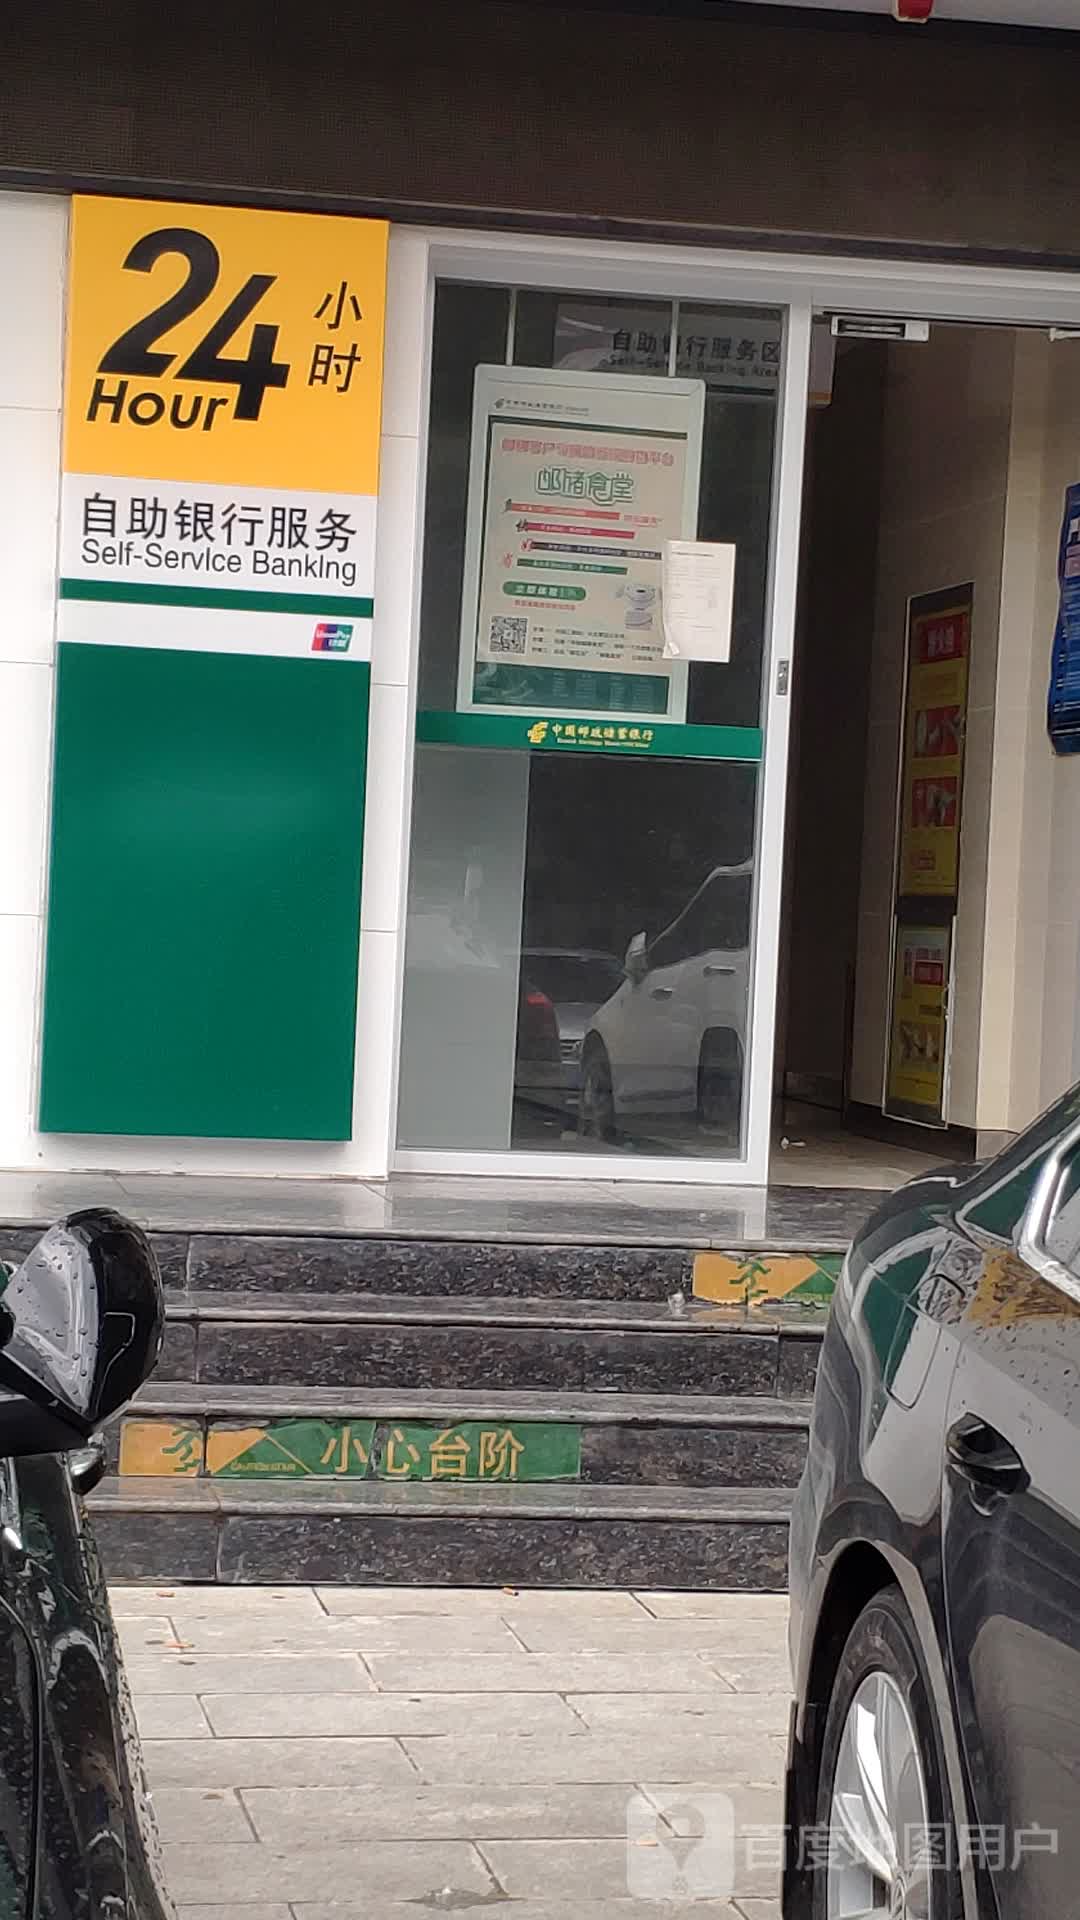 中国邮政储蓄银行24小时自助建行(庆阳市南街支行)